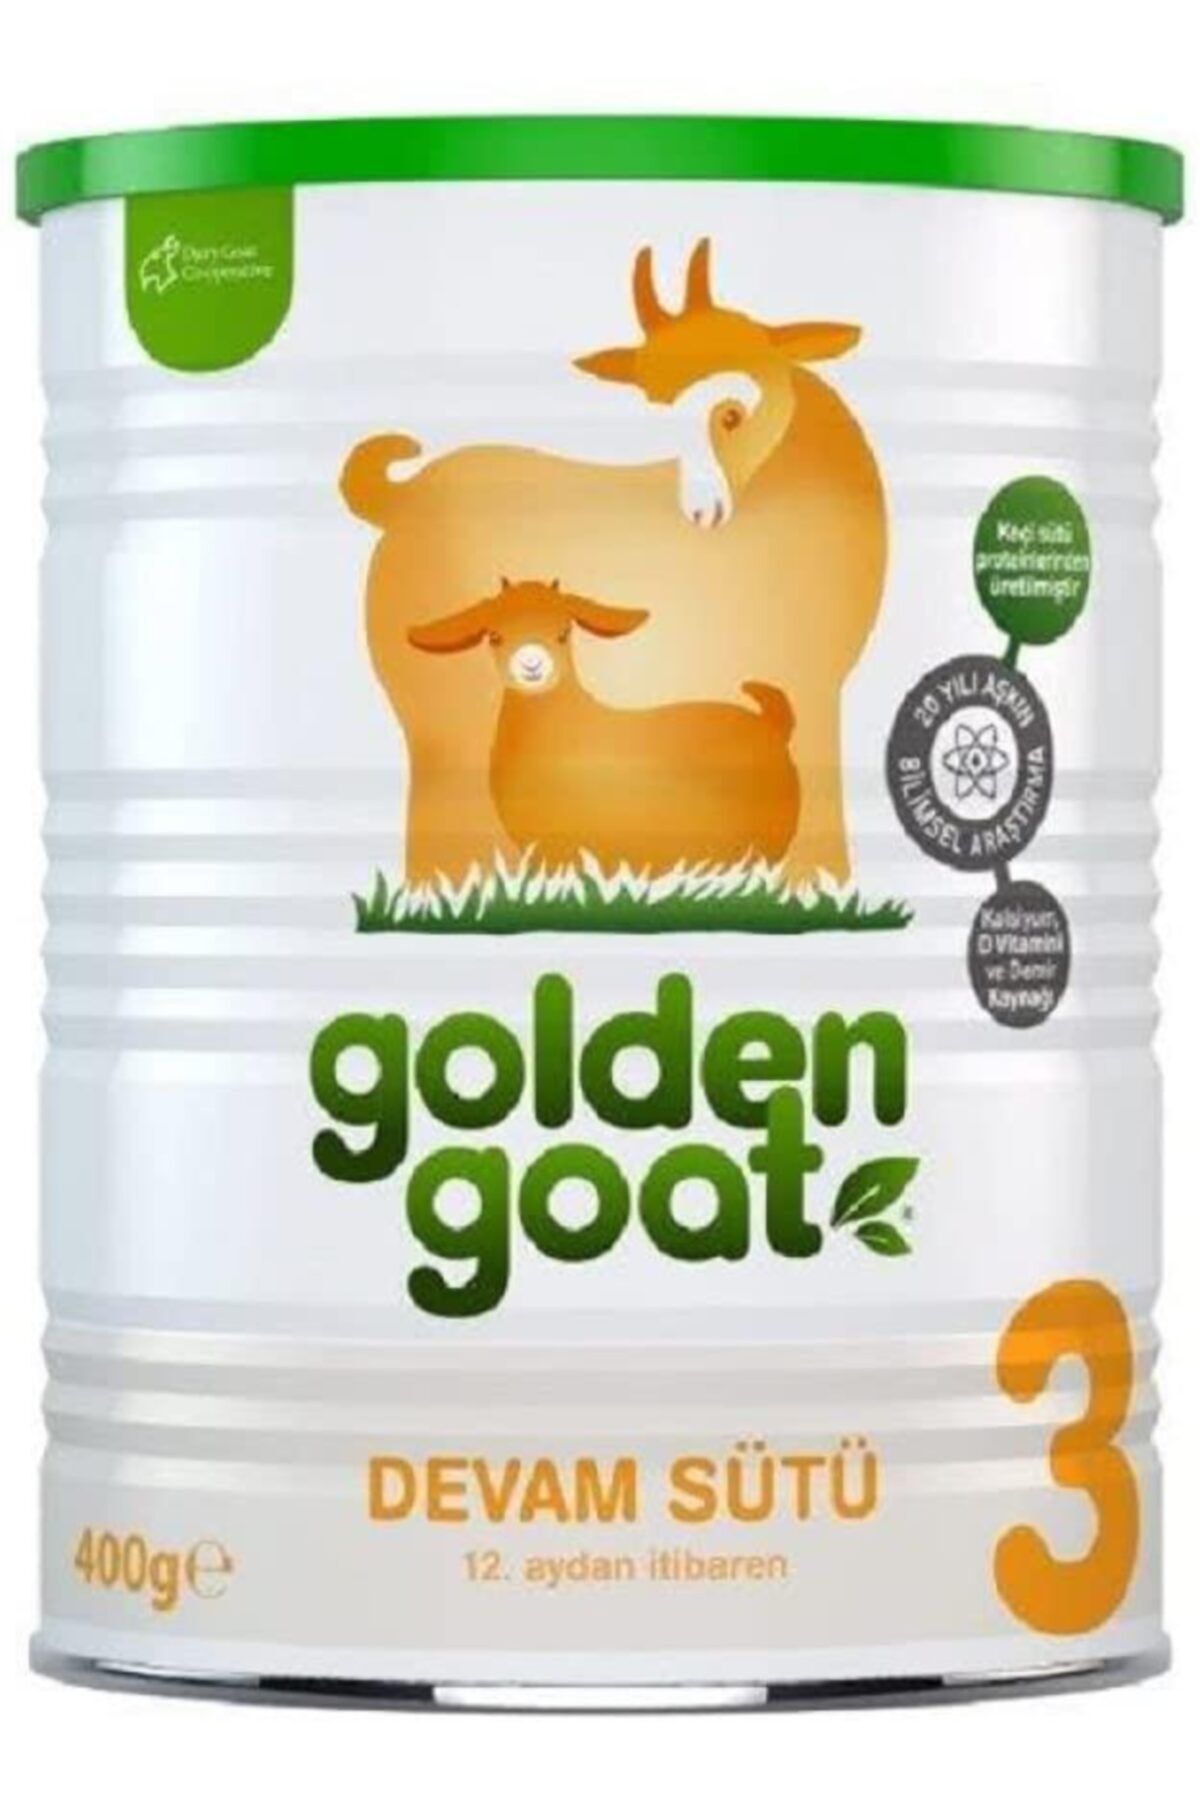 Golden Goat 3 400gr Keçi Sütlü | 12. Aydan Itibaren Devam Sütü